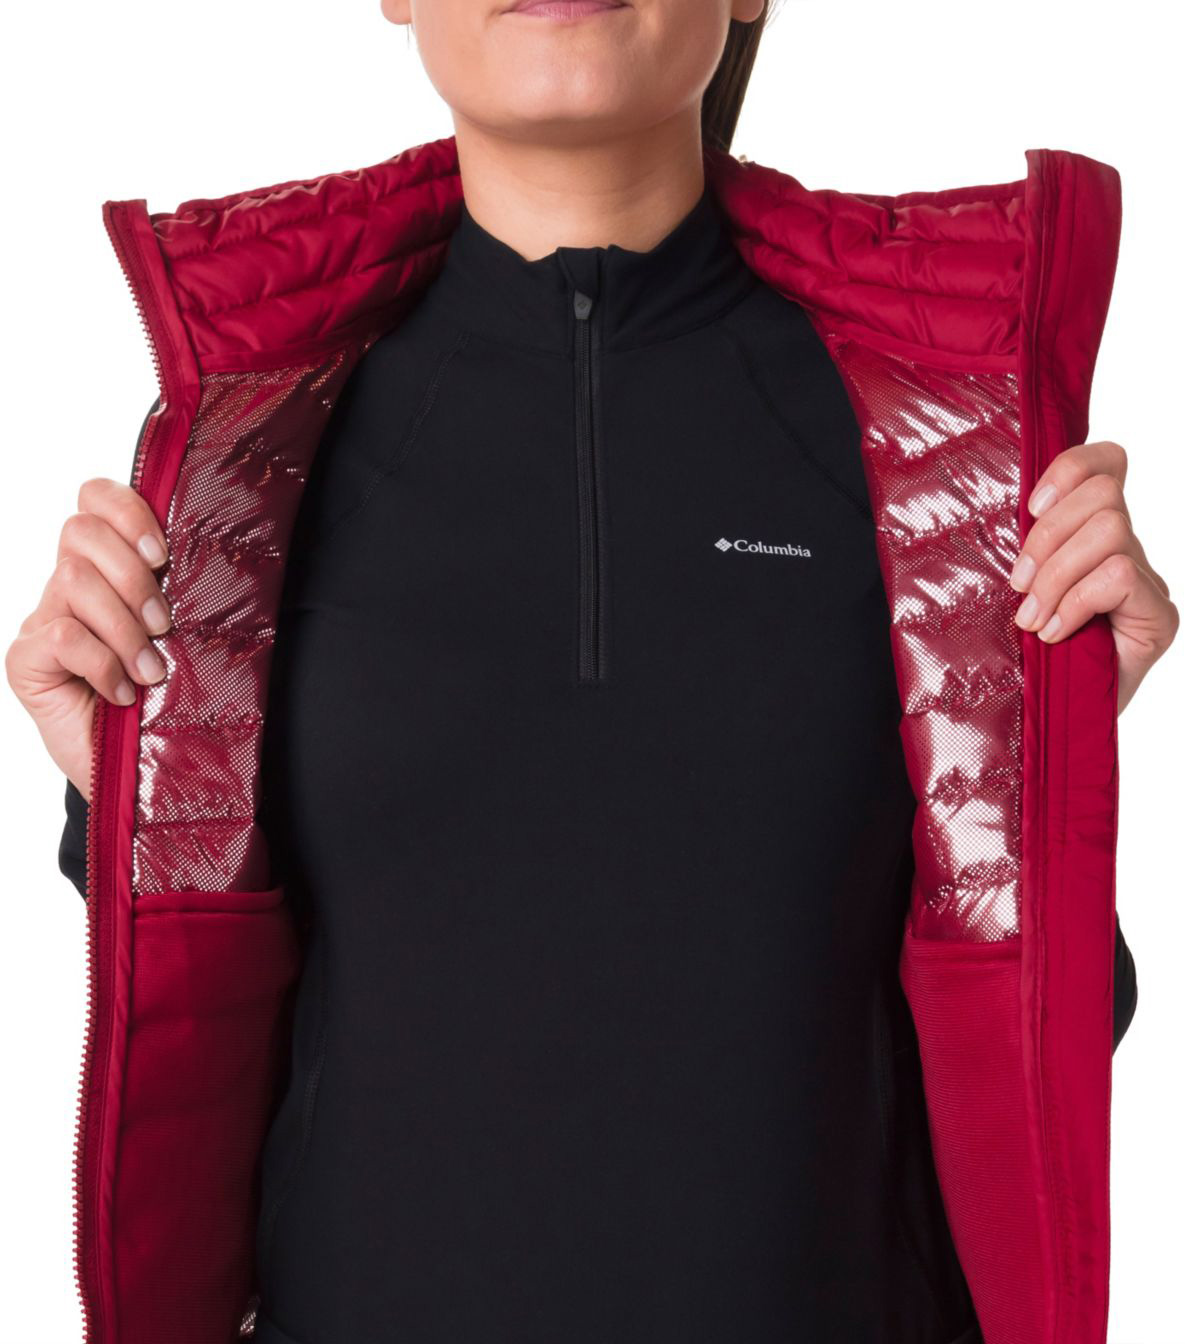 Women's vest